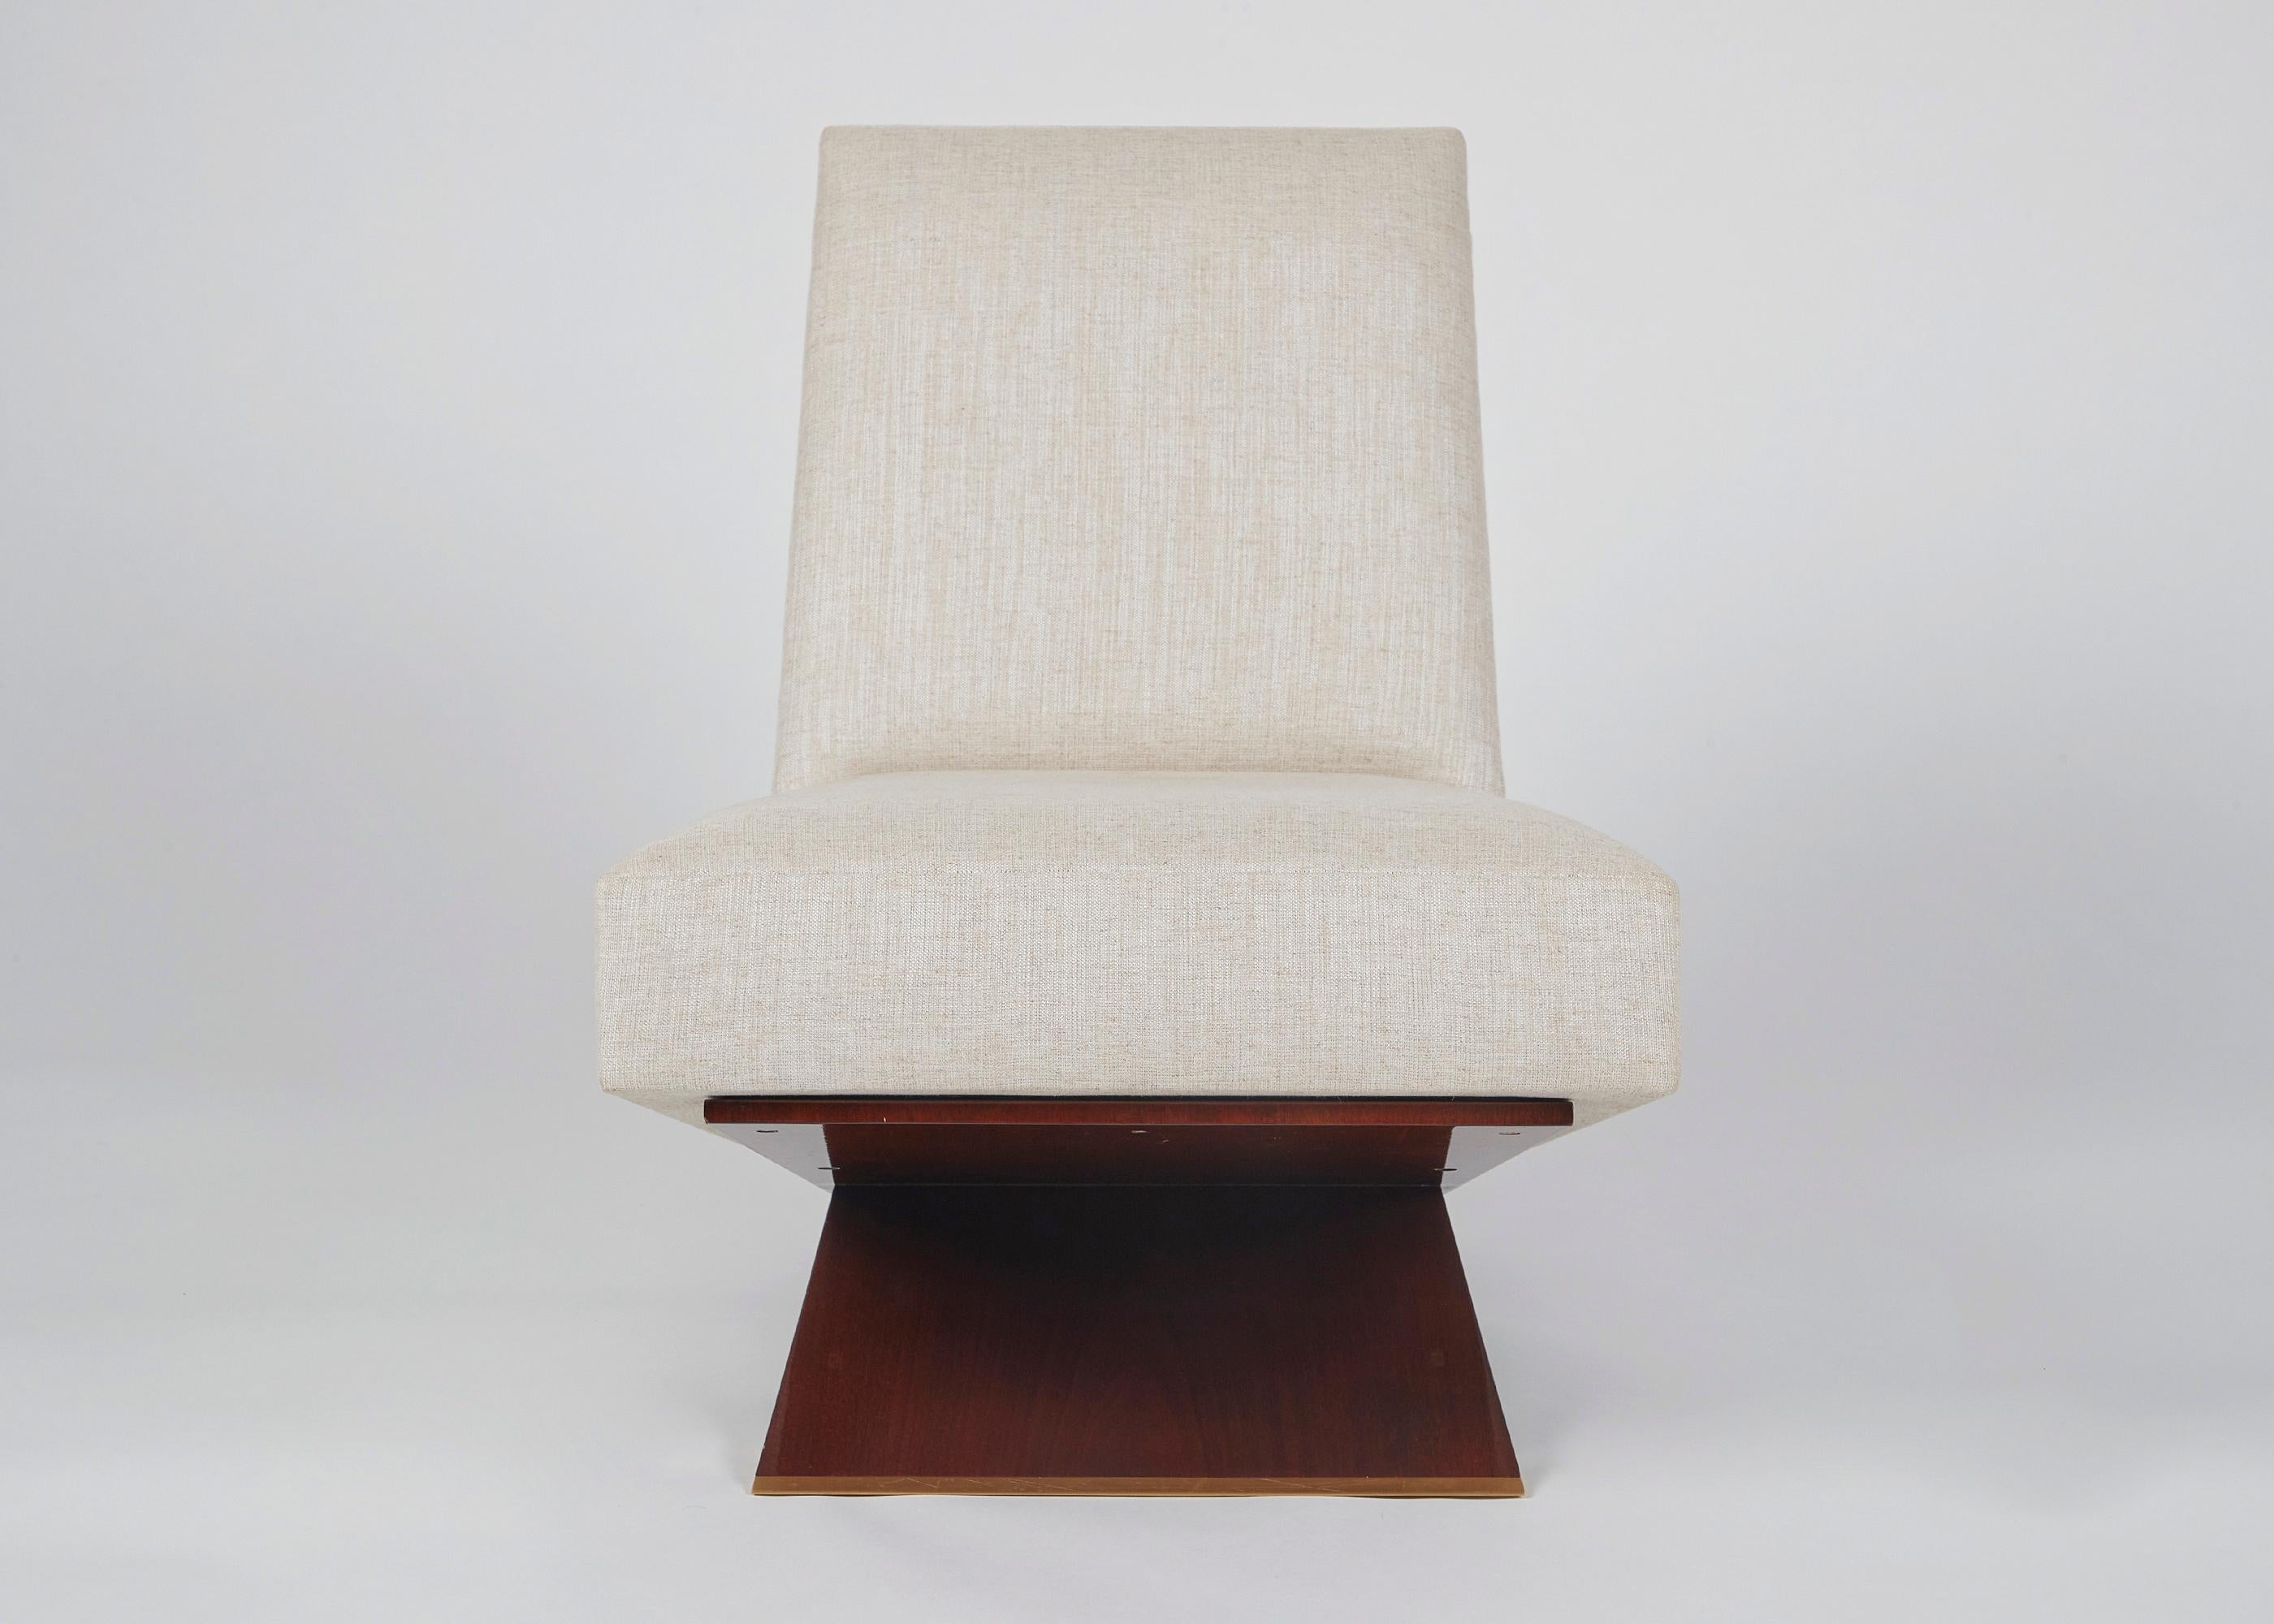 Equipoise, la chaise longue visuellement saisissante de Thomas Pheasant, possède l'équilibre élégant suggéré par son nom, reposant sur trois plans de bois poli parfaitement placés qui s'entrecroisent pour former et soutenir l'assise et le dossier